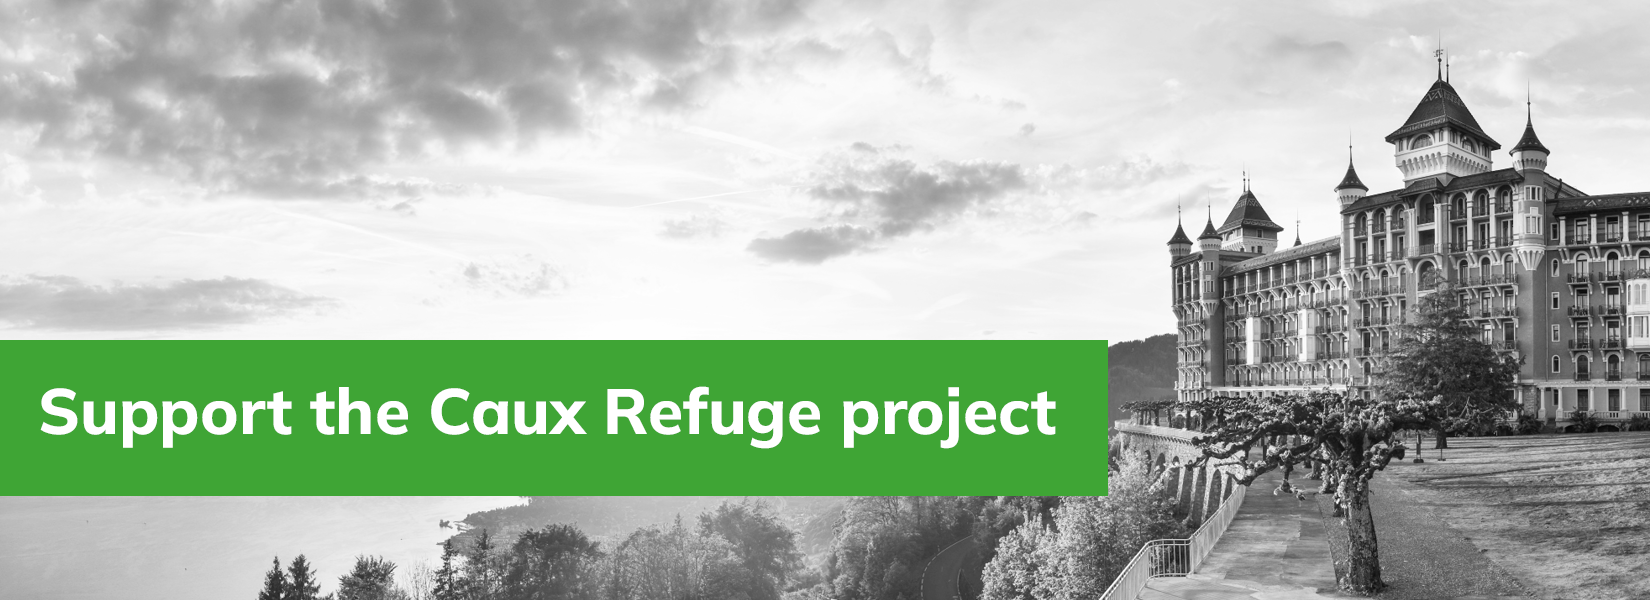 Caux Refuge project slider